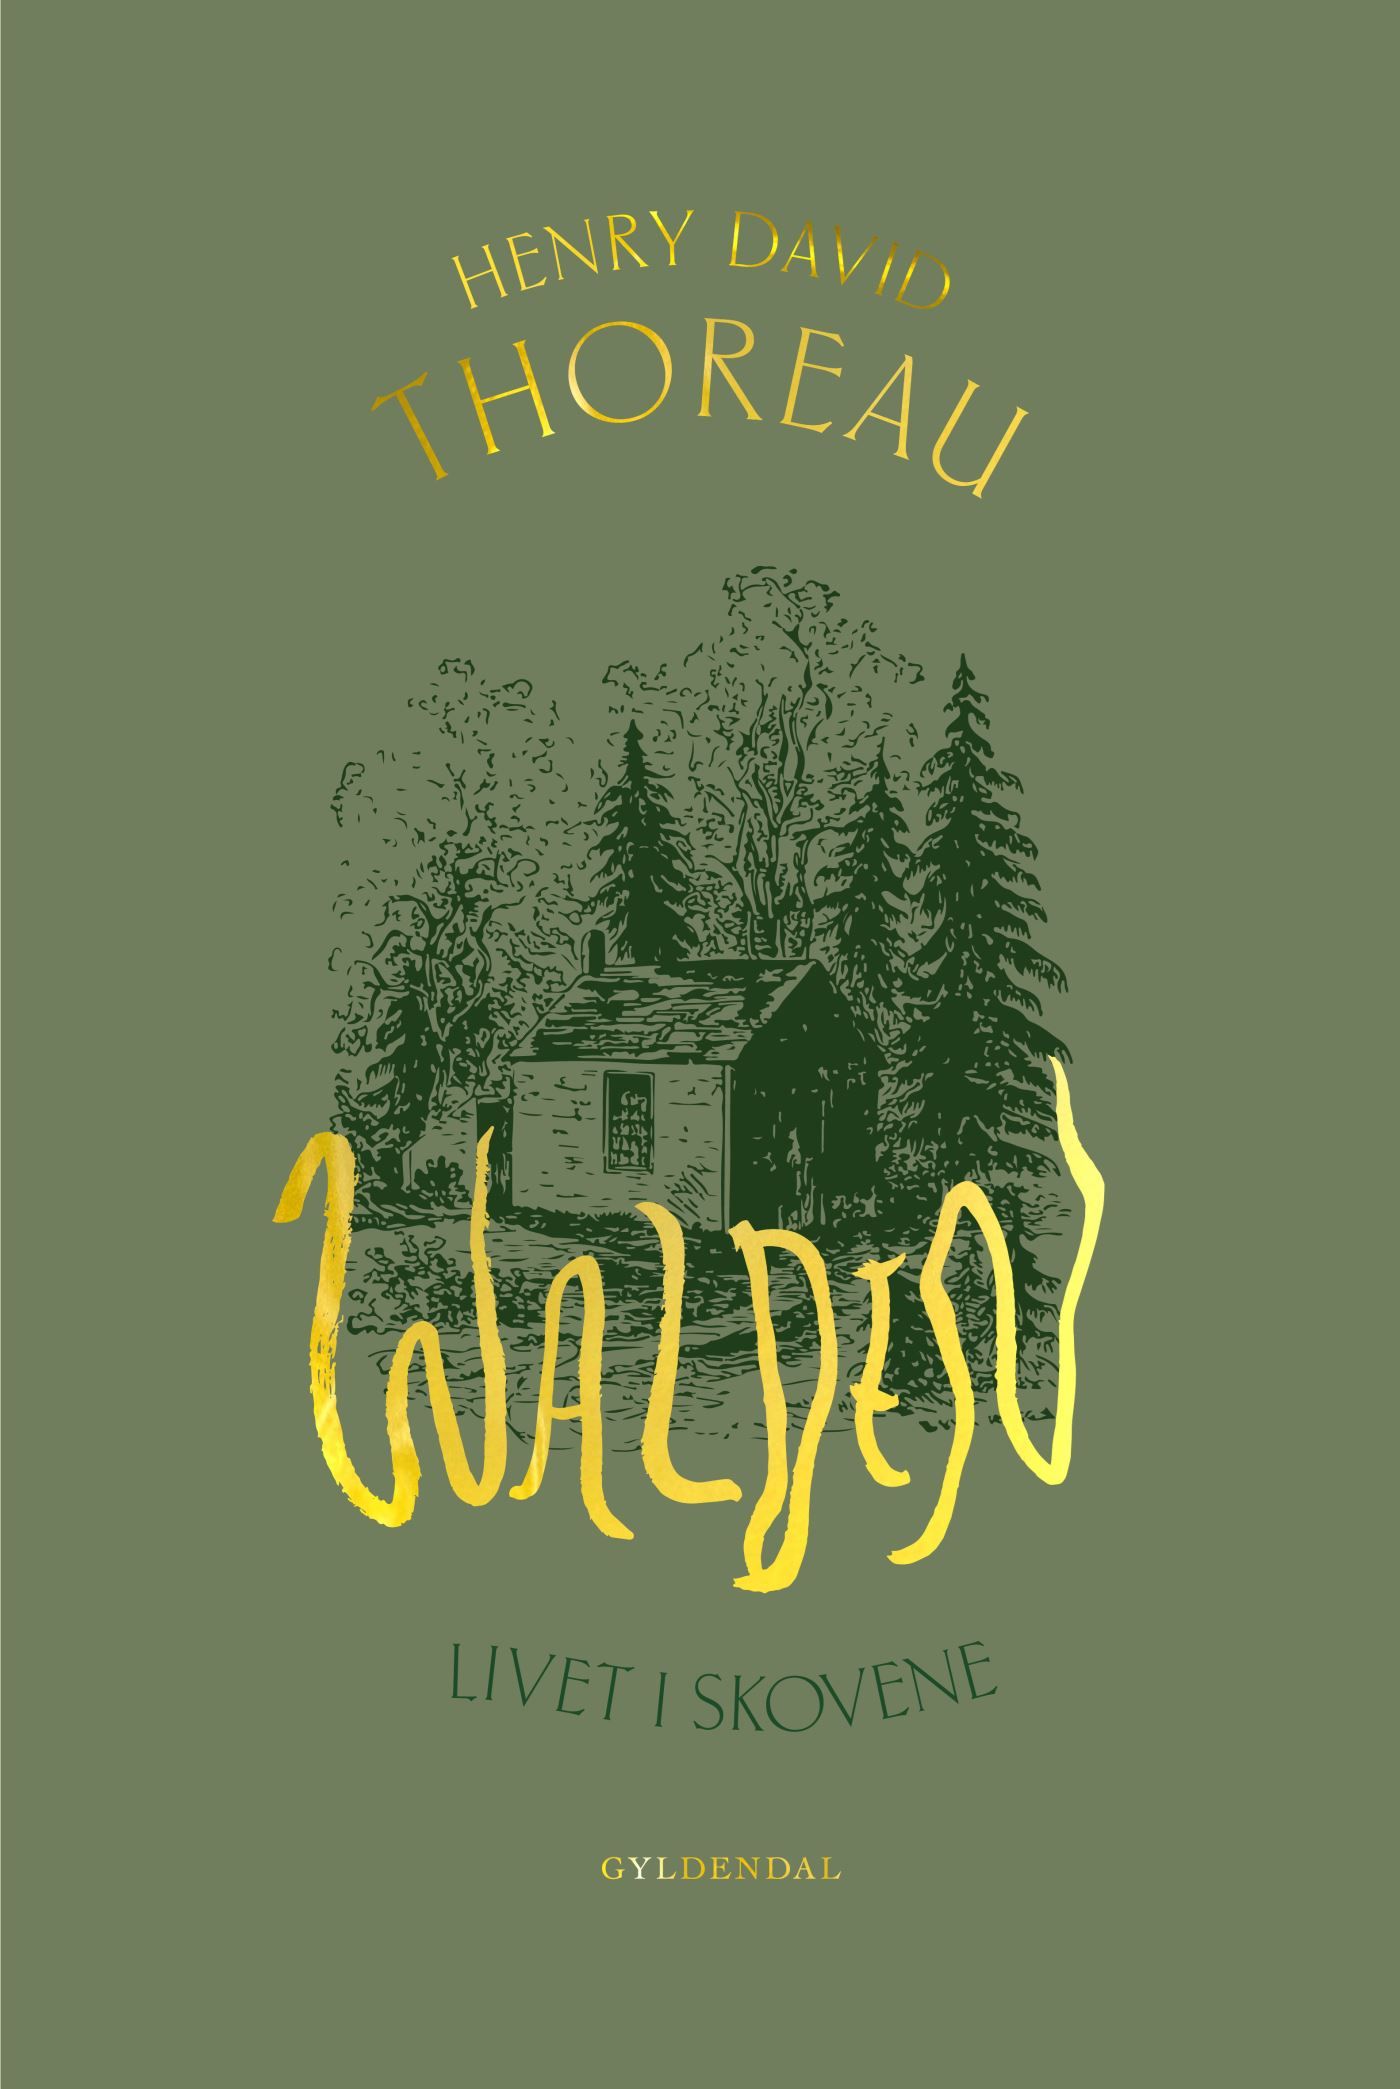 Walden, e-bog af Henry David Thoreau